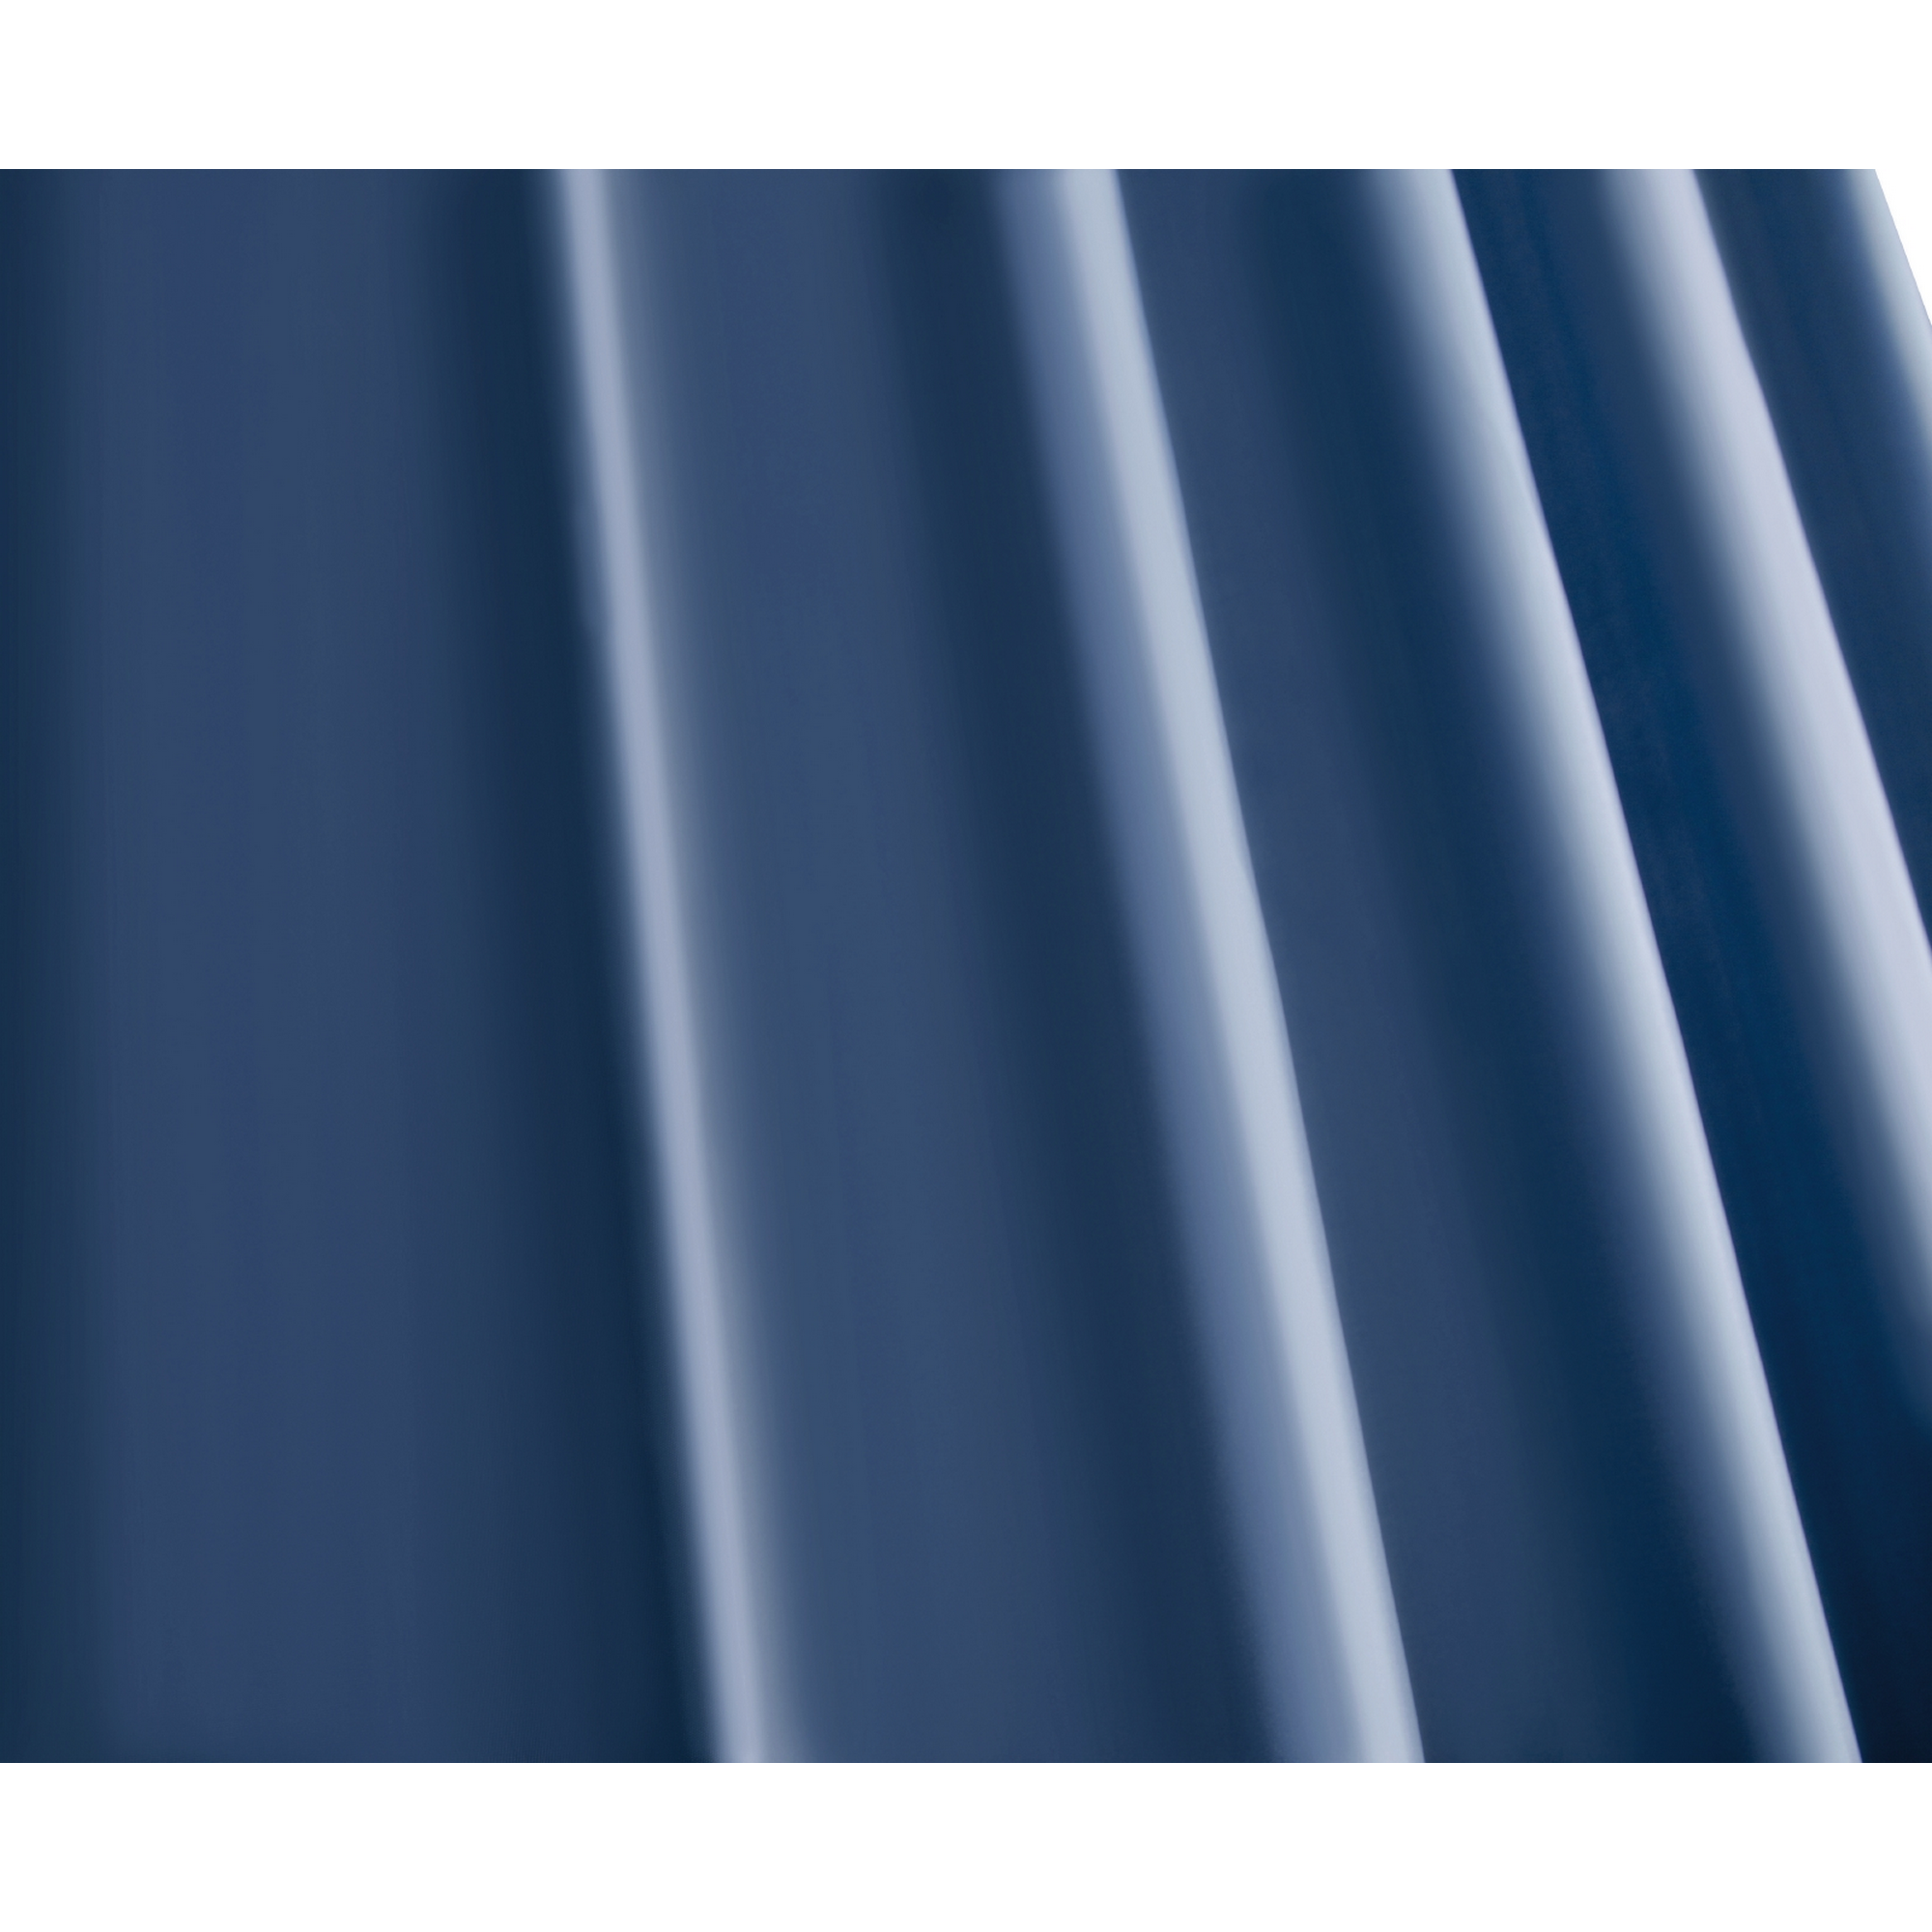 Duschvorhang 'Embosa' Textil dunkelblau 180 x 200 cm + product picture